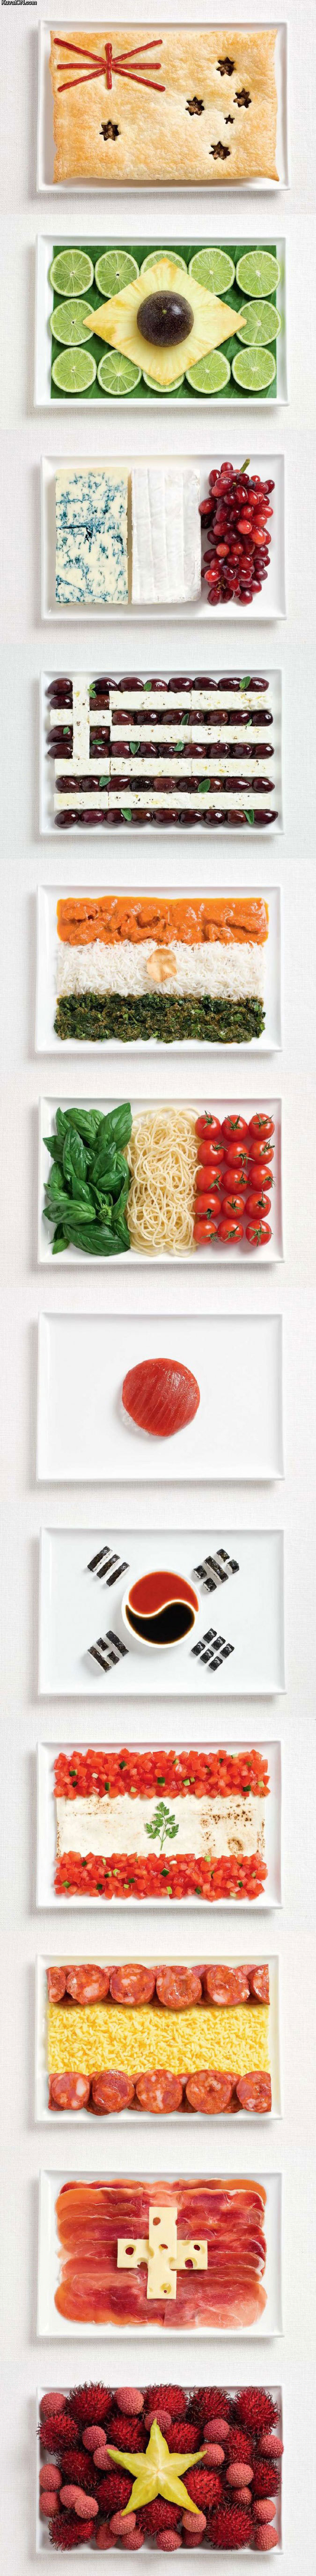 food_flags.jpg